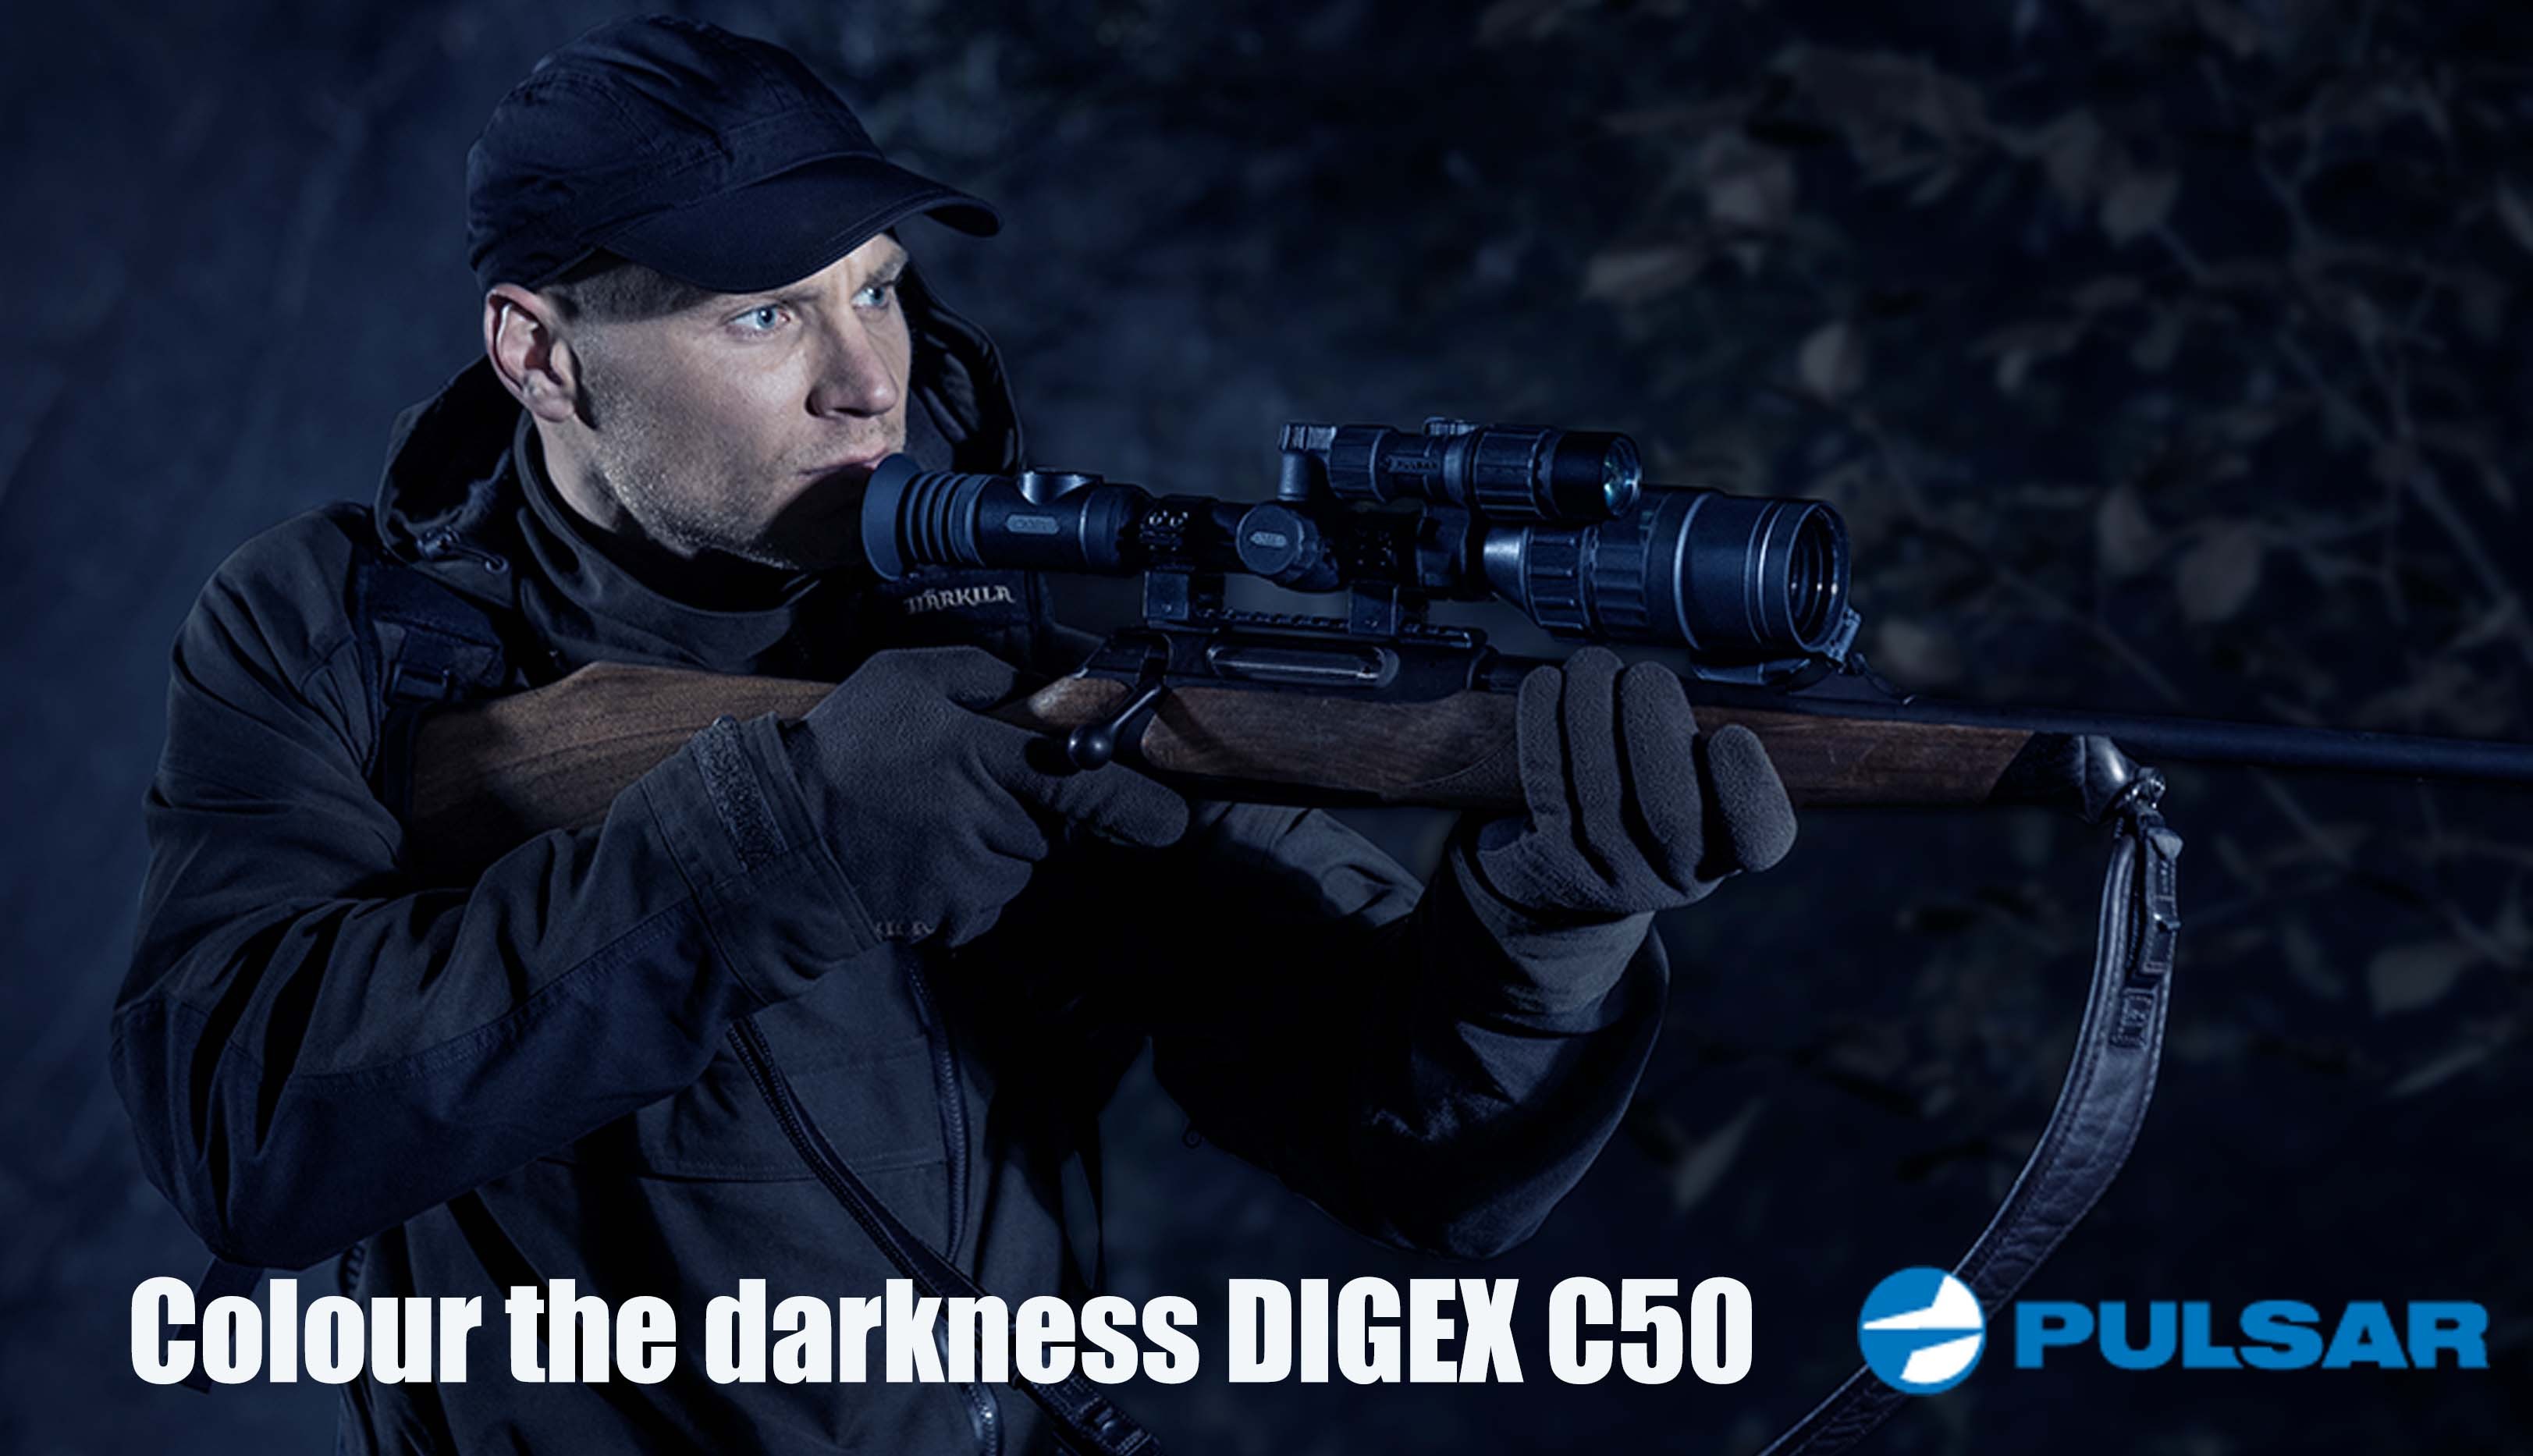 digex c50